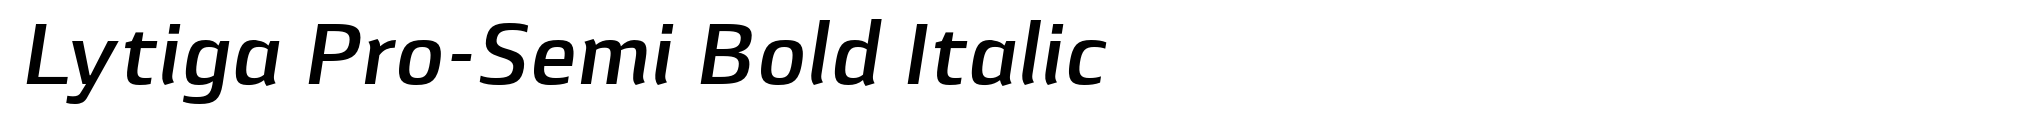 Lytiga Pro-Semi Bold Italic image